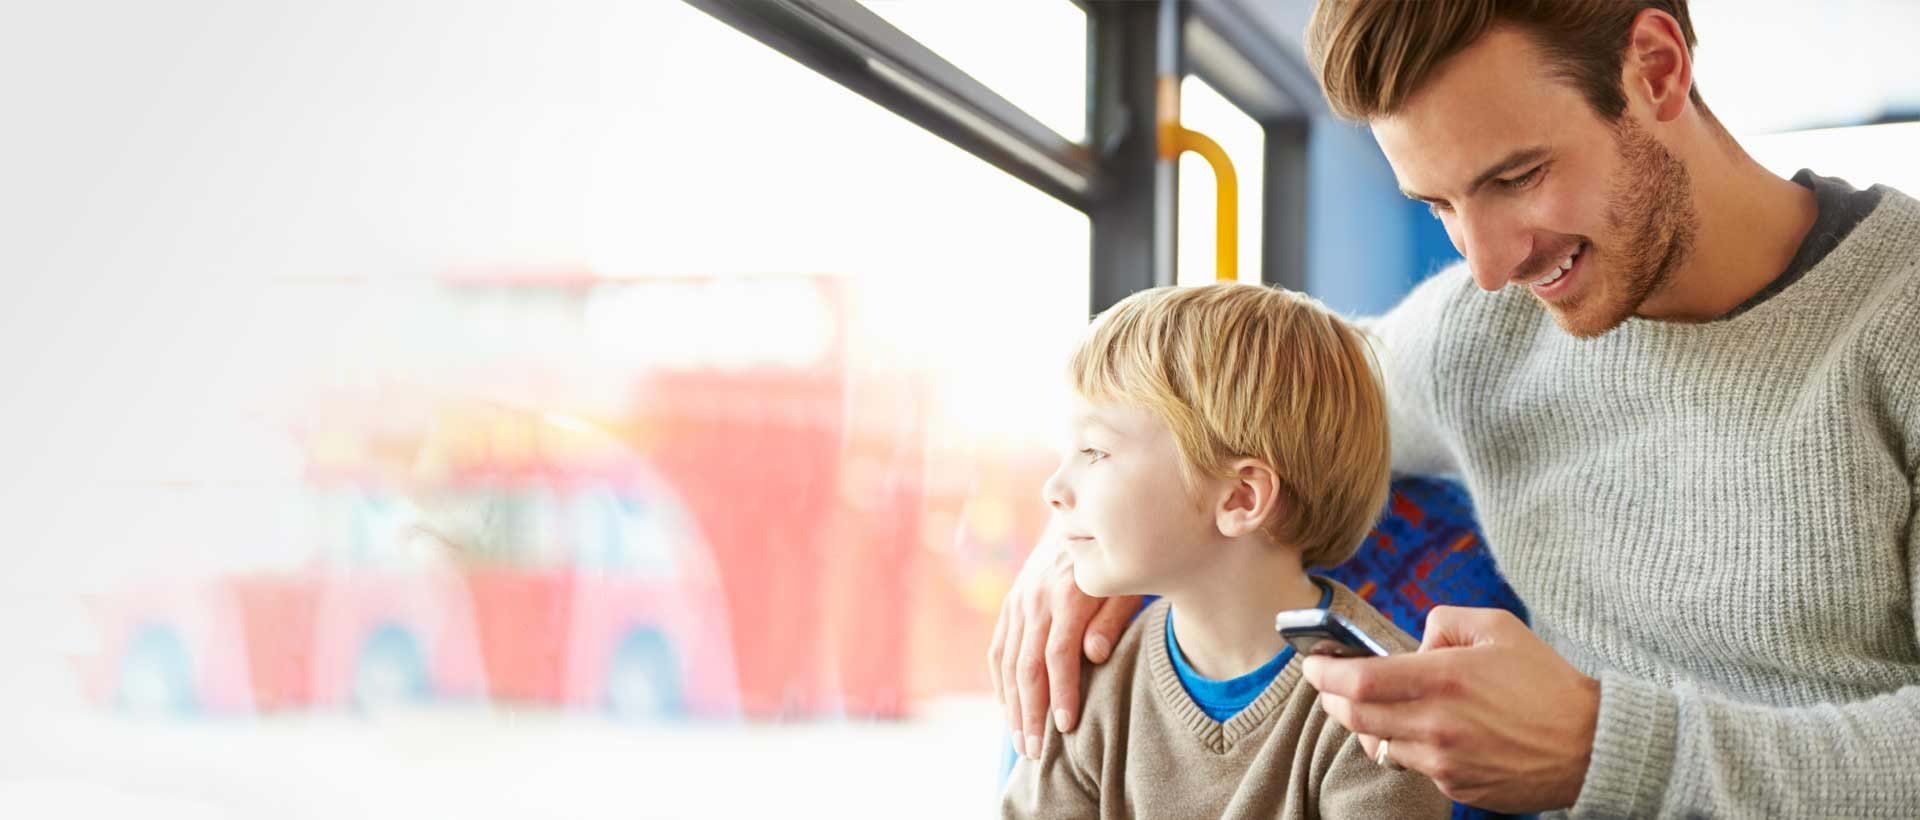 En mann og et barn sjekker dagens lekser på skole-appen mens de sitter på en buss.